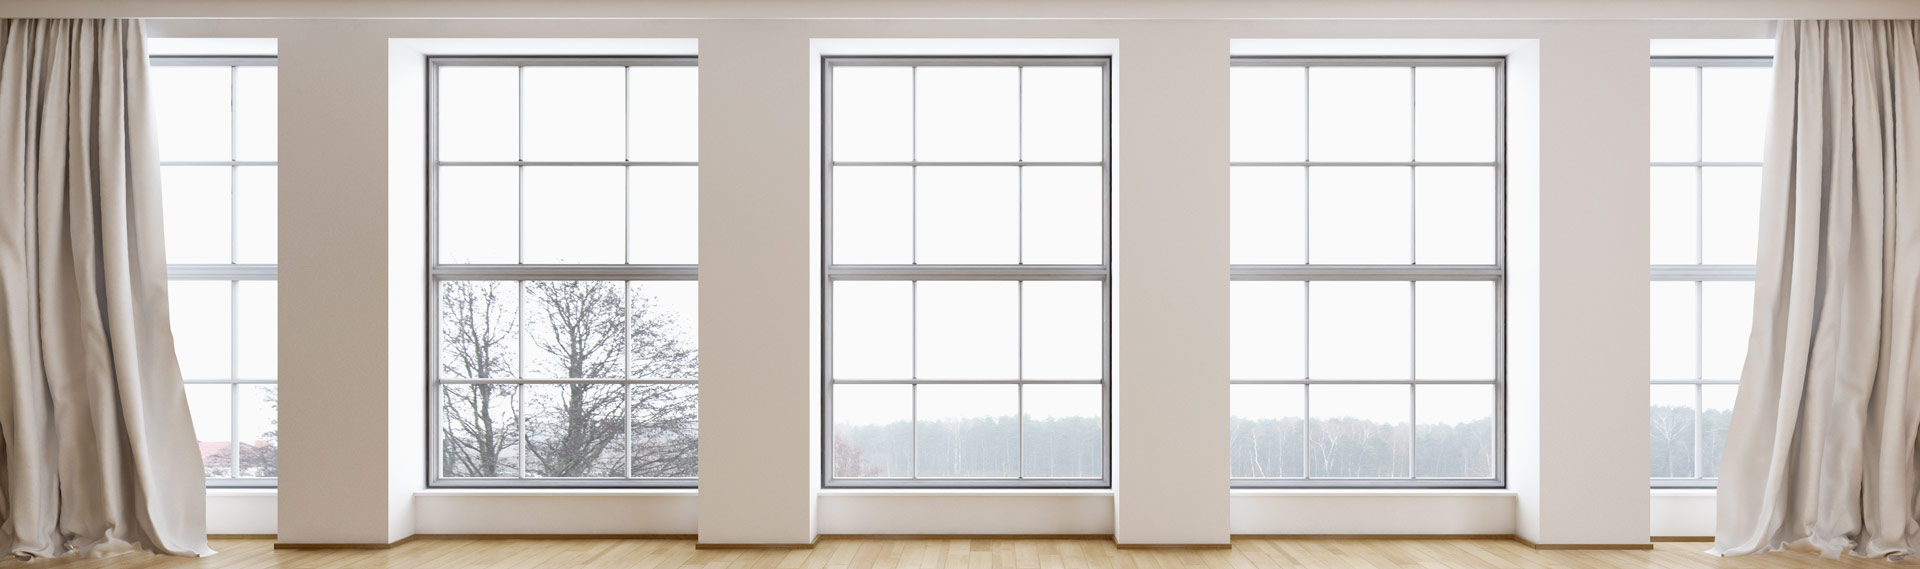 windows in empty living room